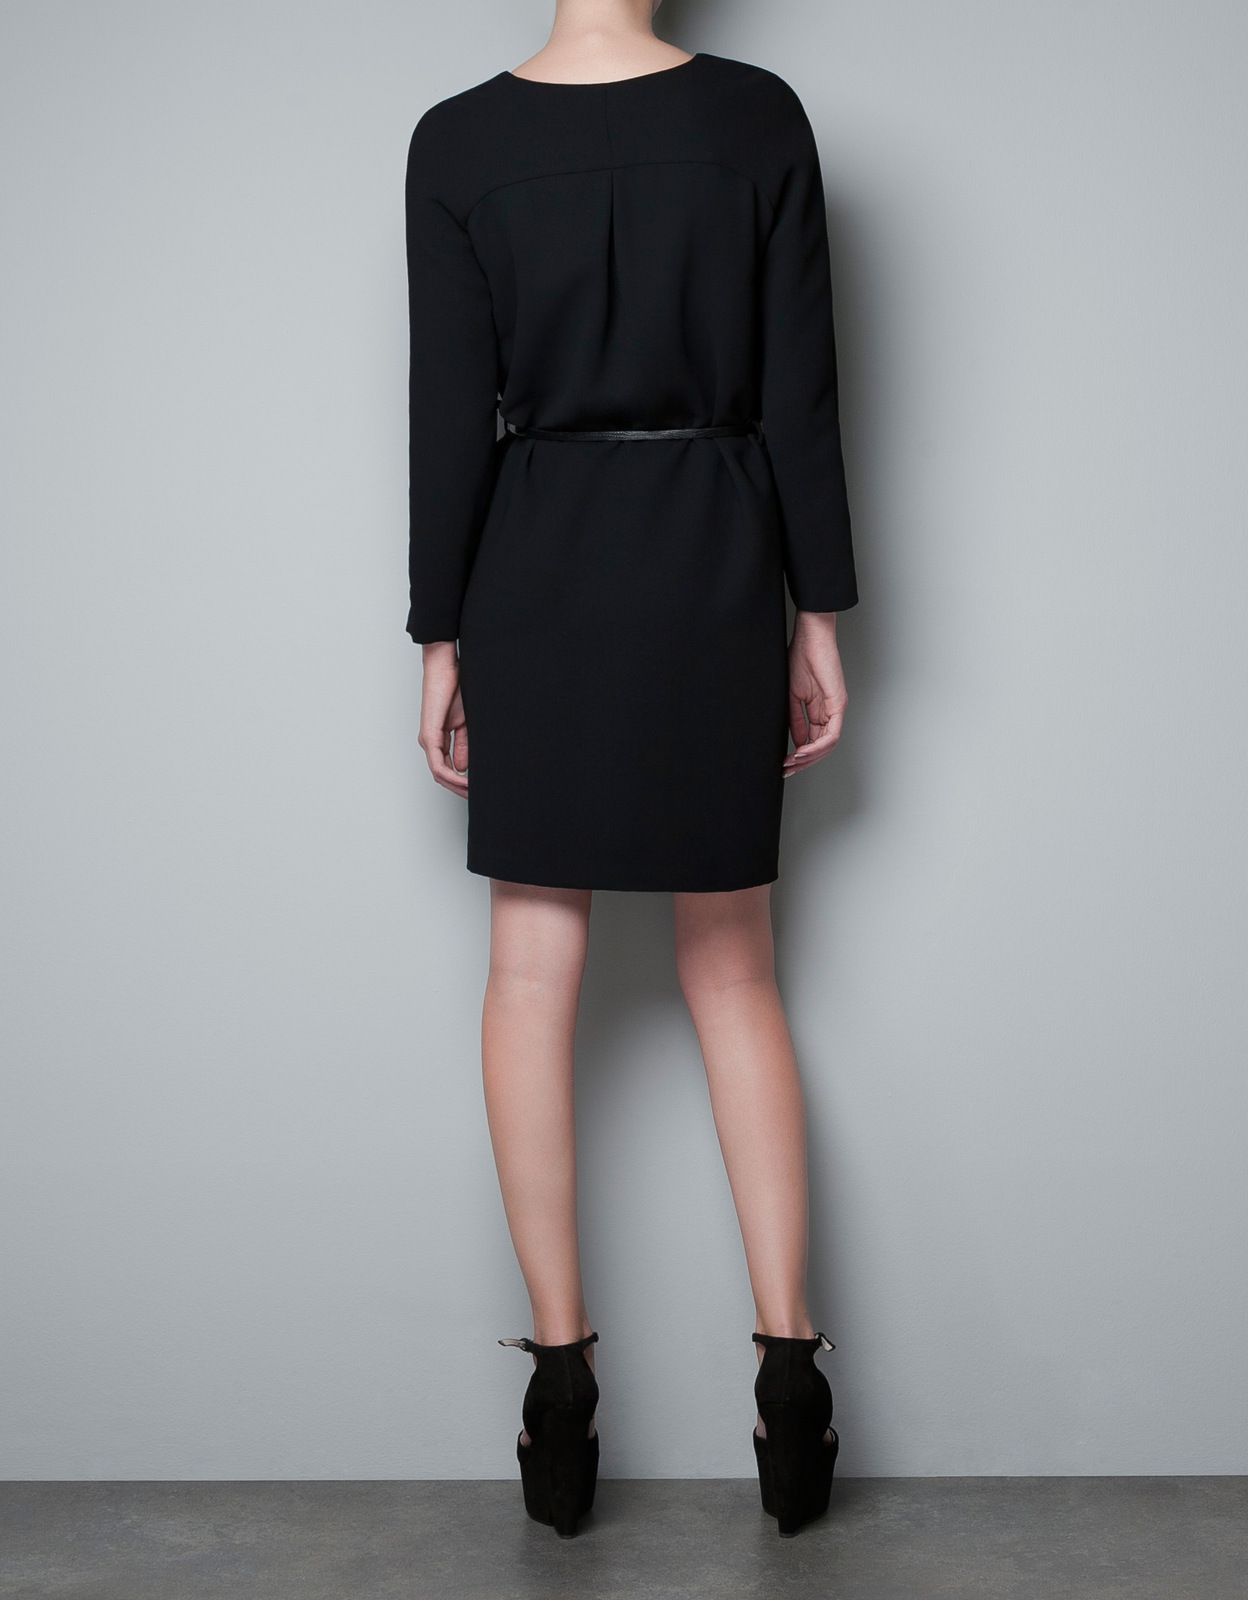 Zara csepp kivágású fekete ruha 2012 fotója